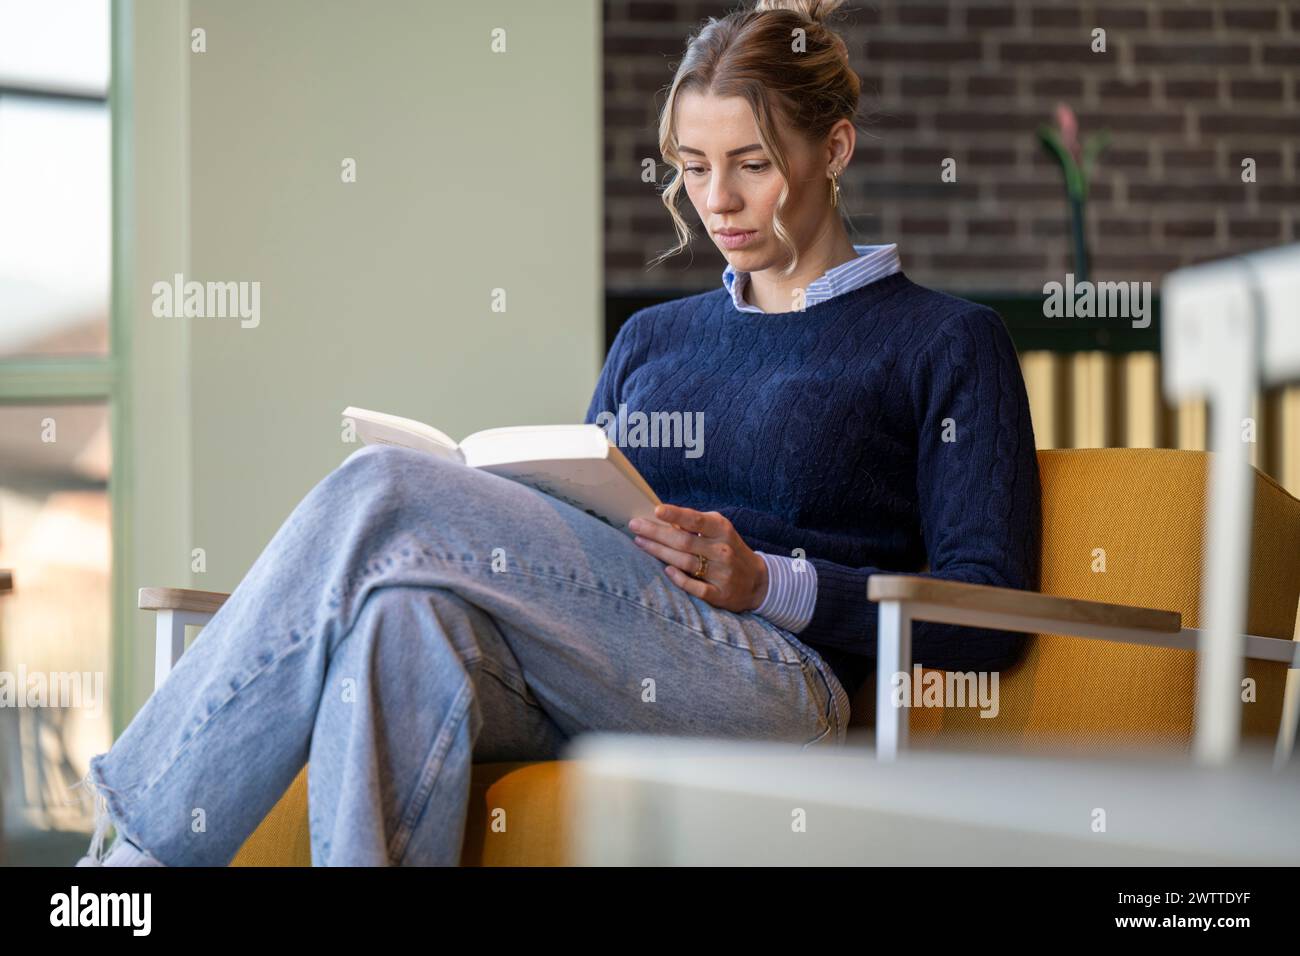 Femme engrossée dans la lecture d'un livre dans un coin confortable. Banque D'Images